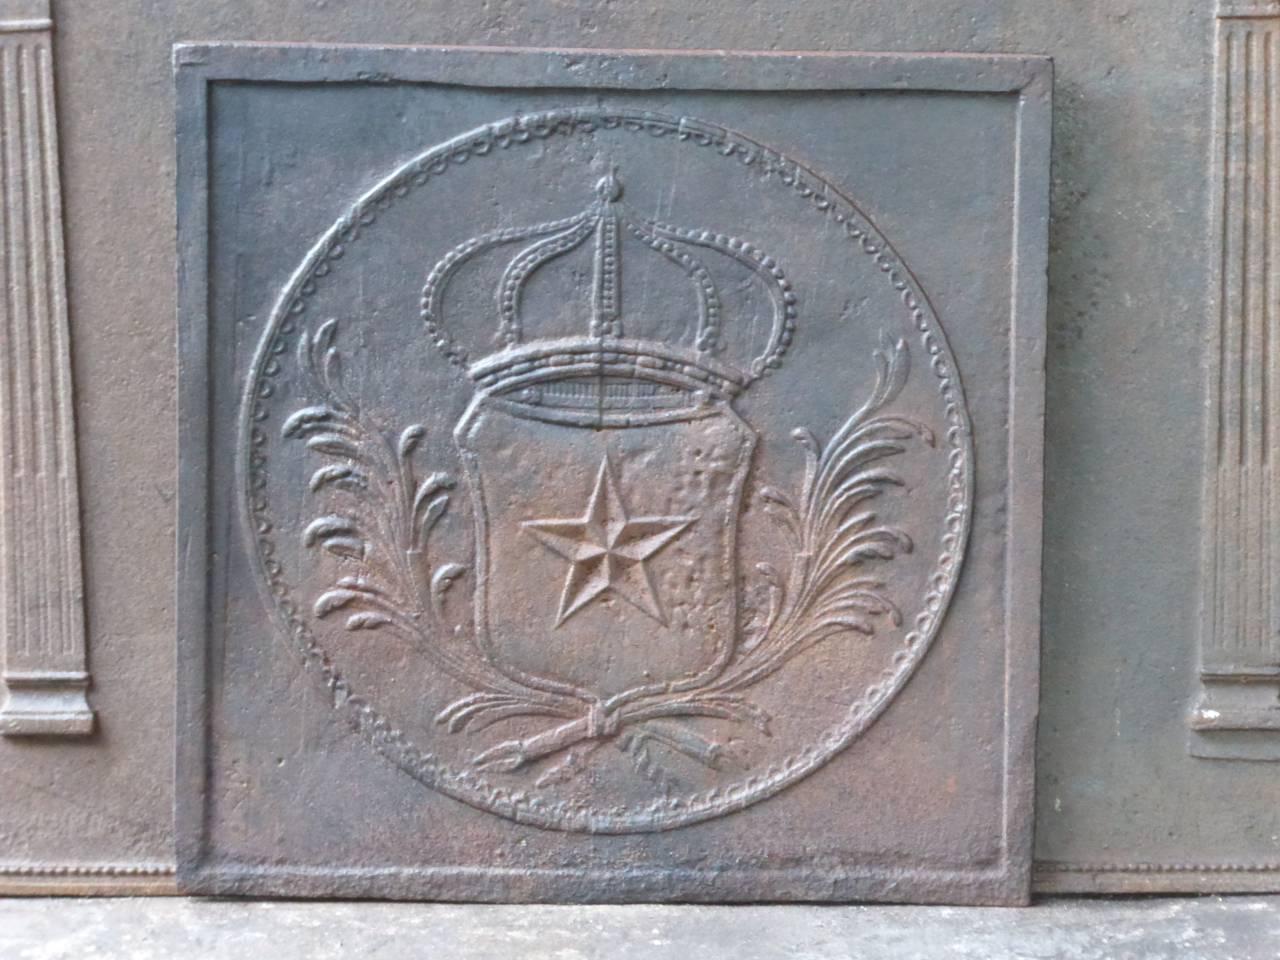 19. Jahrhundert, französischer Kaminboden mit dem Wappen Frankreichs. Die Krone symbolisiert das Königtum und das Palmblatt steht für den Sieg. Im Stil von Louis XIV.

Wir haben eine einzigartige und spezialisierte Sammlung von antiken und